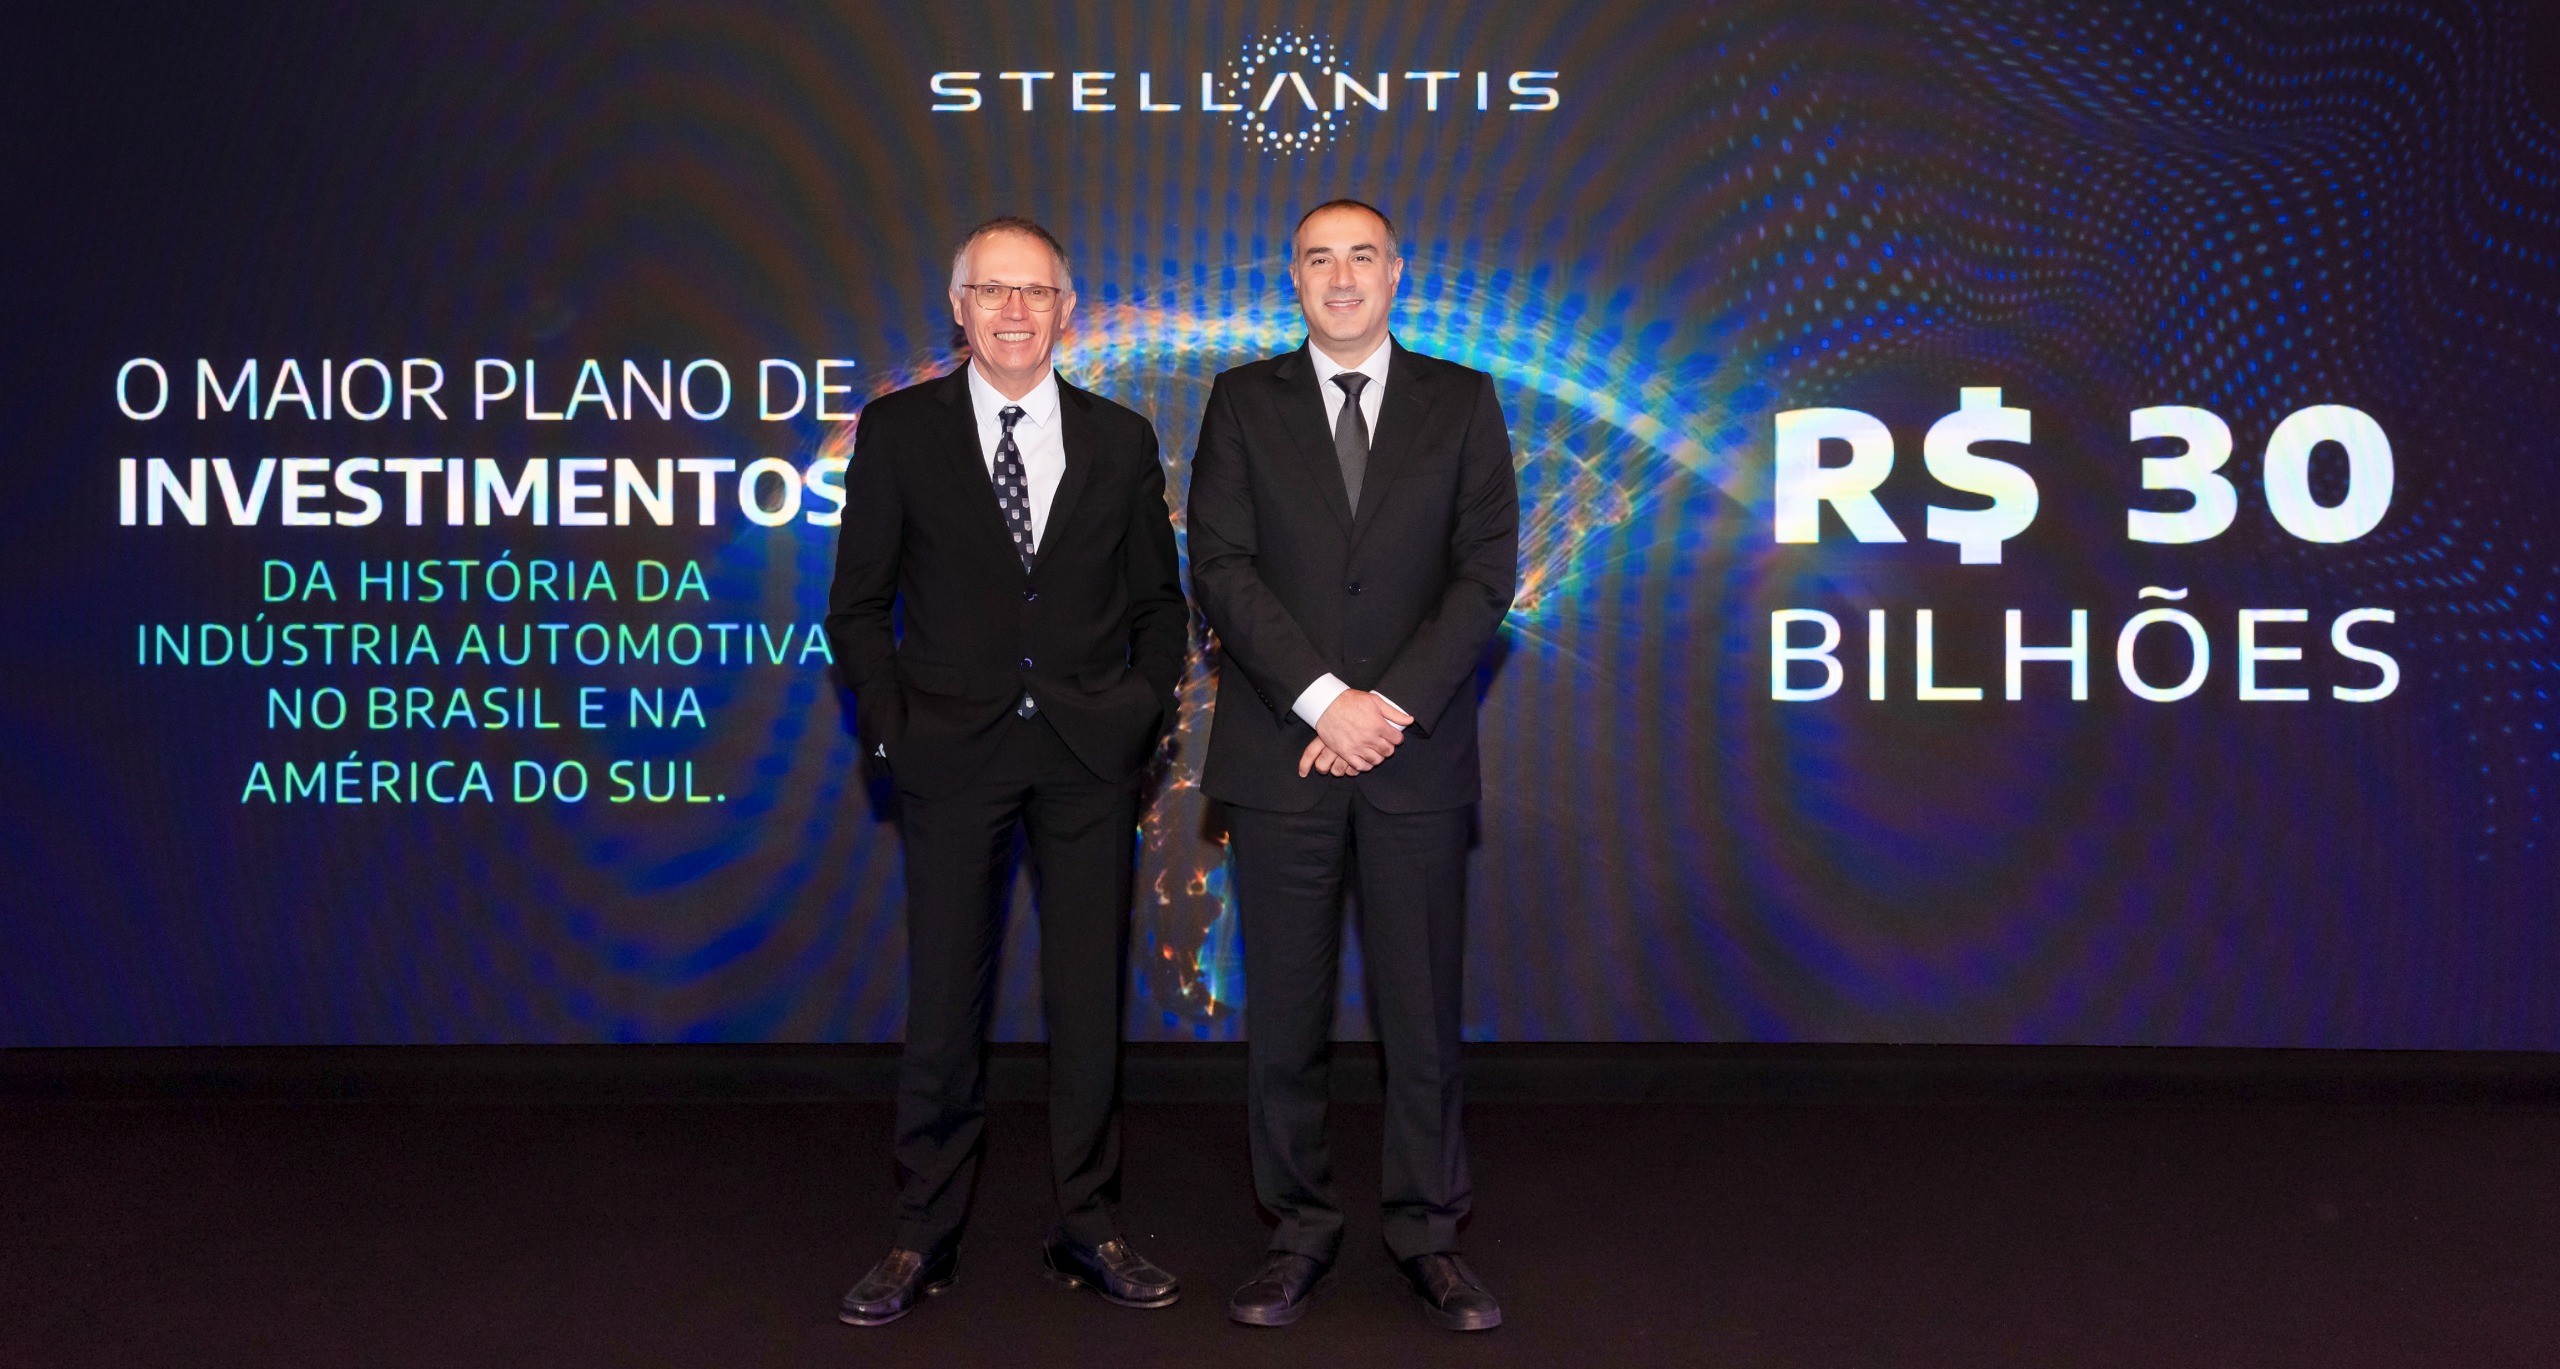 Stellantis, dona de Fiat e Jeep, anuncia investimento de R$ 30 bilhões no Brasil até 2030